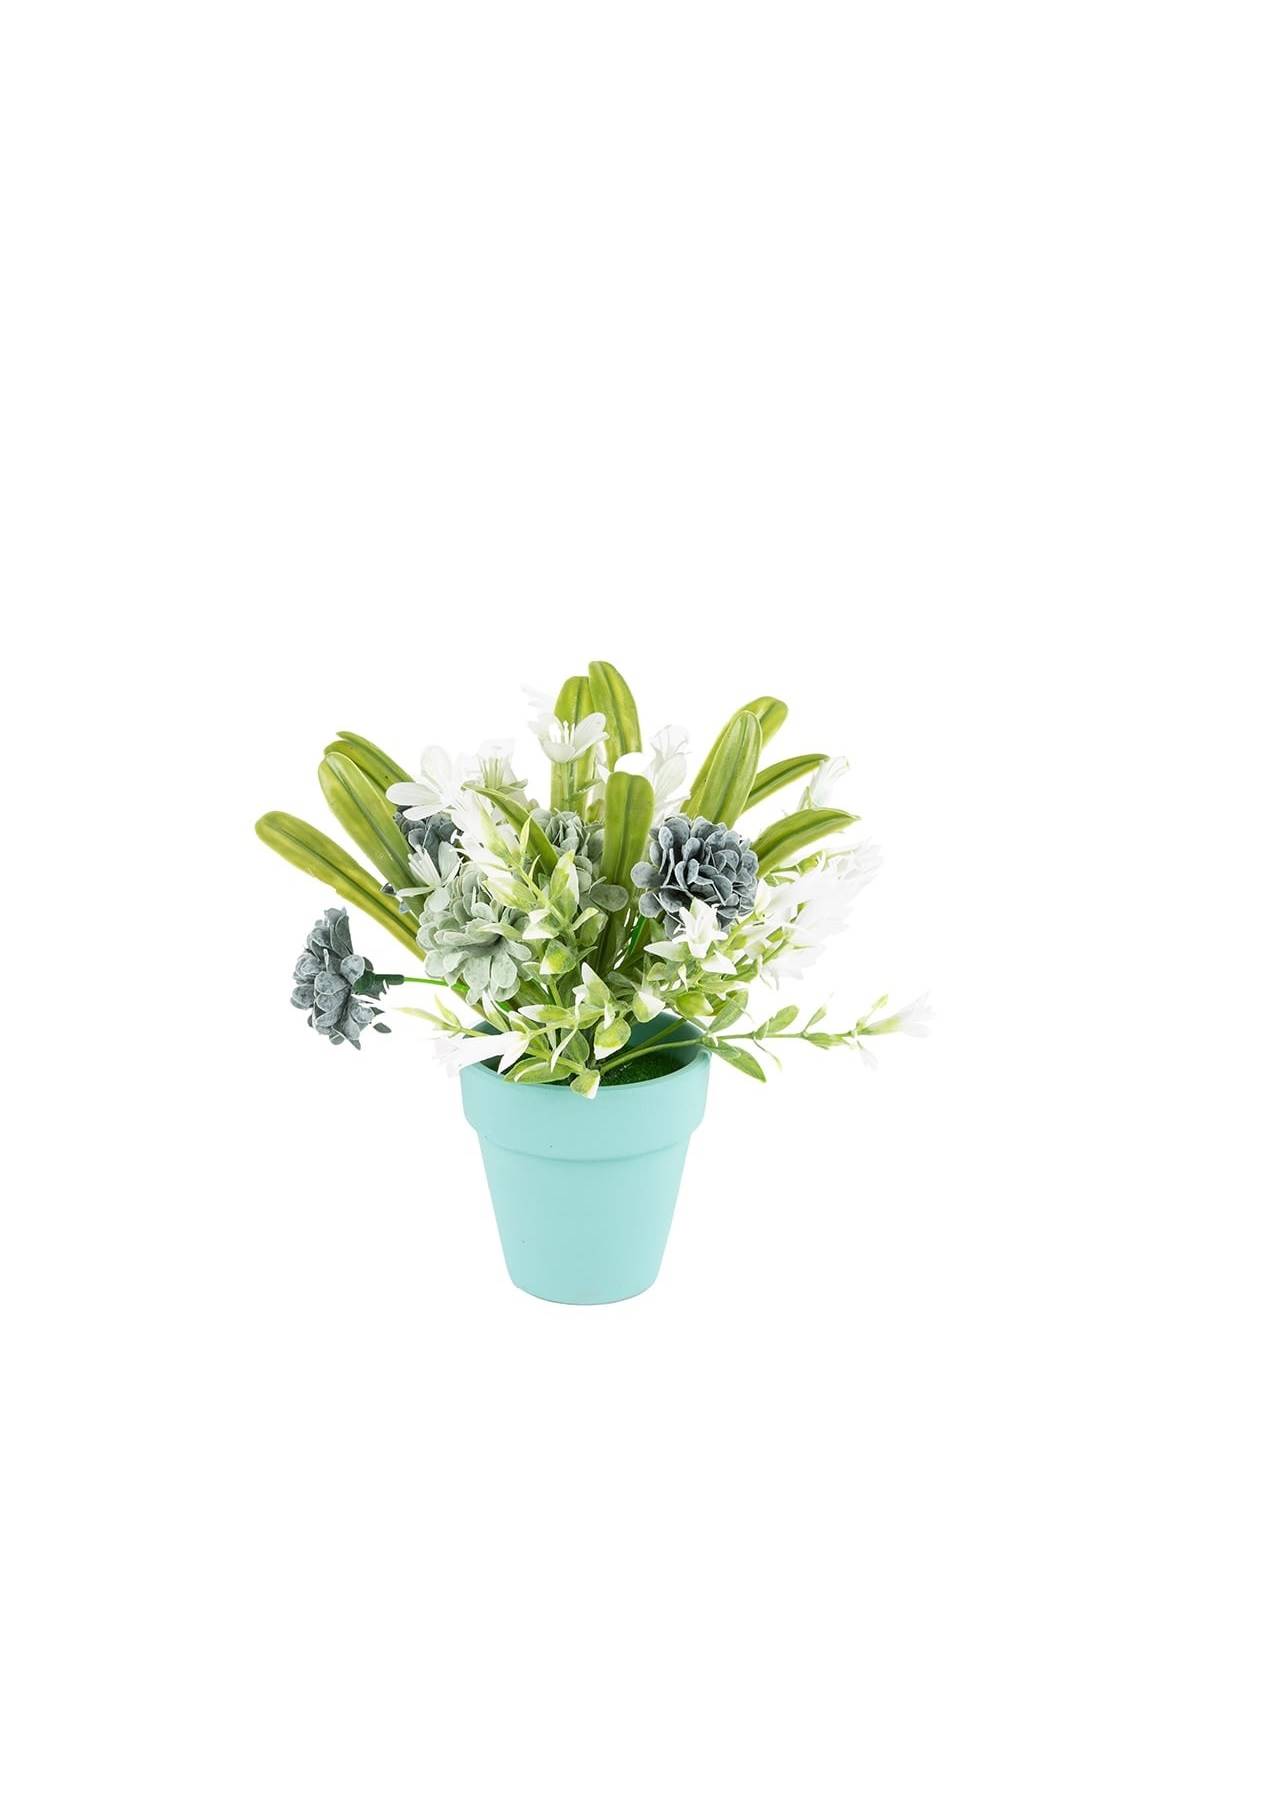 plantas artificiales bonitas flores artificiales en maceta, 5,99€